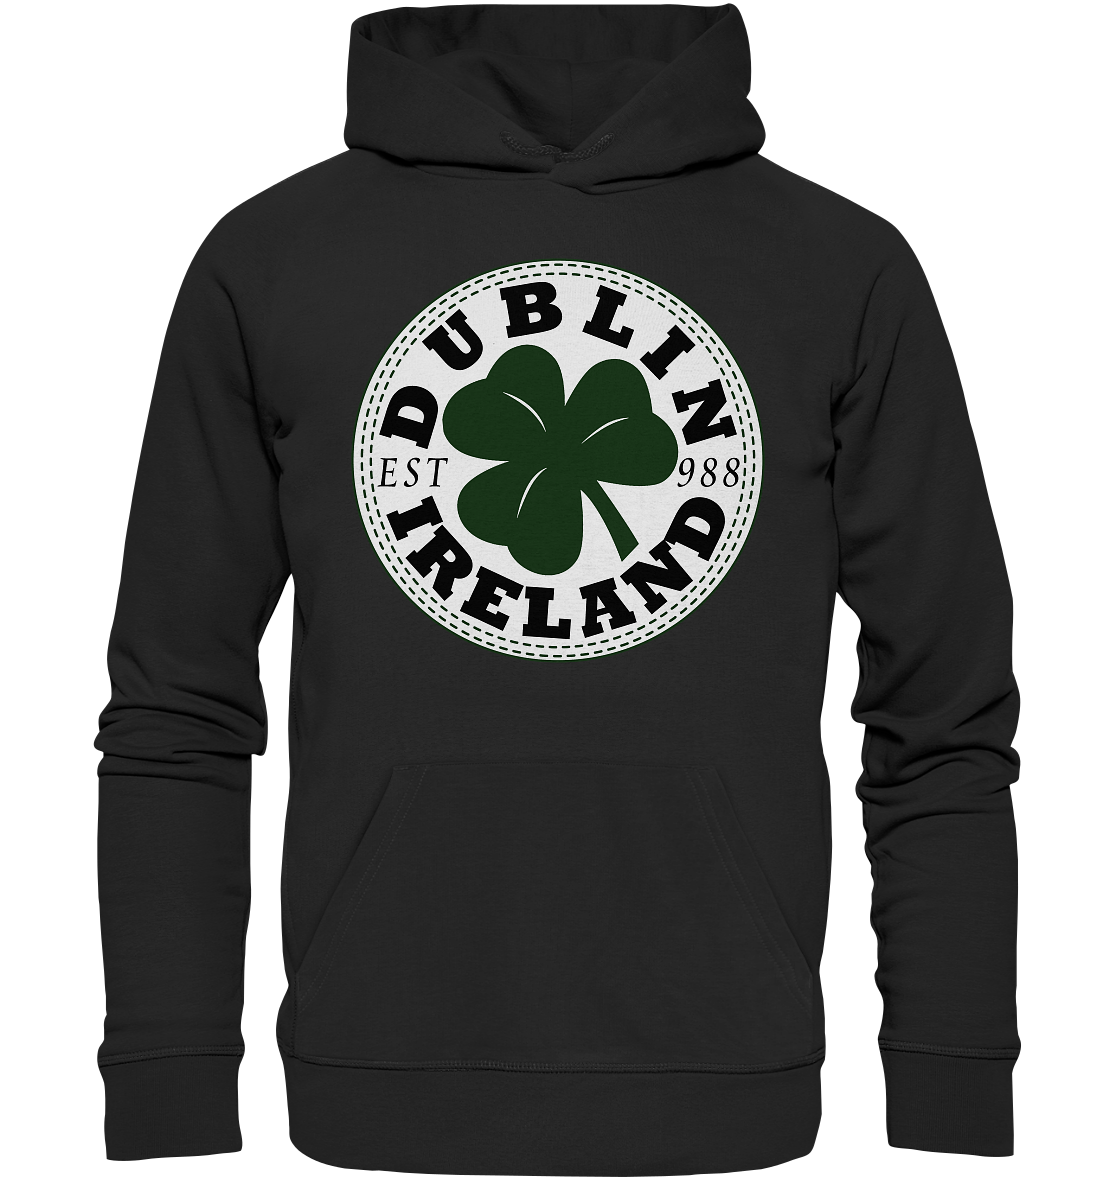 Dublin "Ireland / Est 988" - Premium Unisex Hoodie